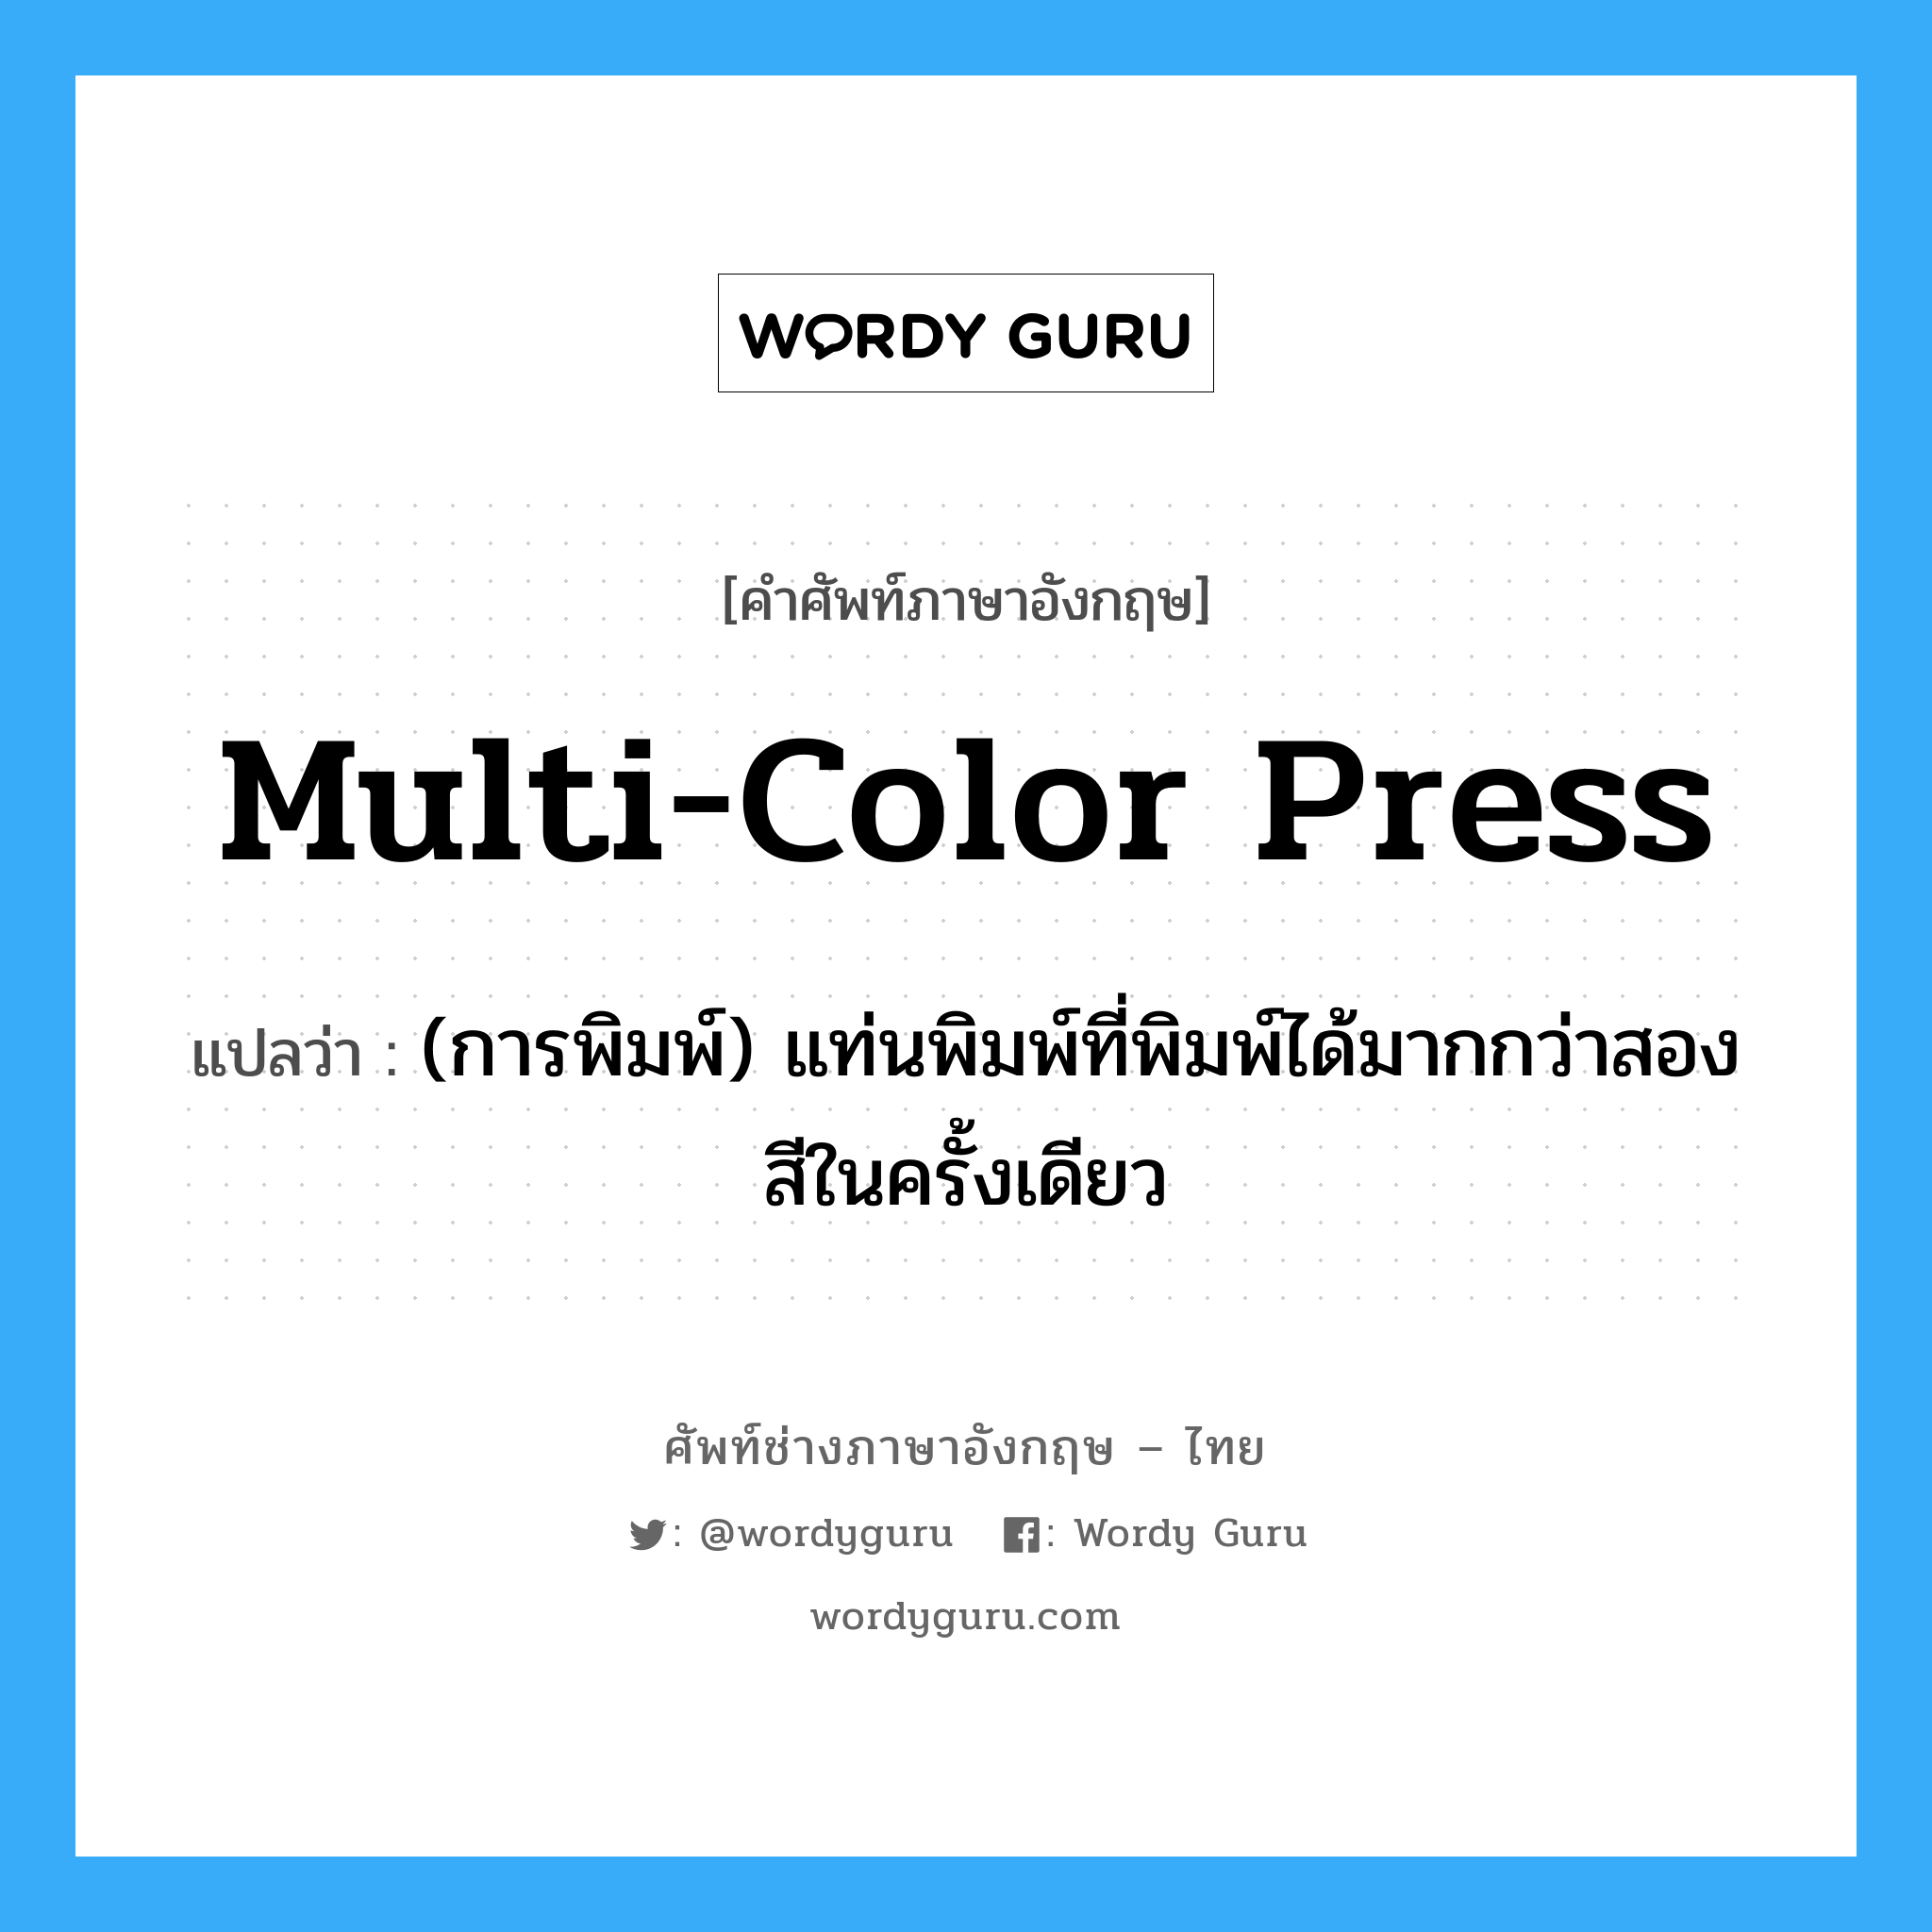 multi-color press แปลว่า?, คำศัพท์ช่างภาษาอังกฤษ - ไทย multi-color press คำศัพท์ภาษาอังกฤษ multi-color press แปลว่า (การพิมพ์) แท่นพิมพ์ที่พิมพ์ได้มากกว่าสองสีในครั้งเดียว